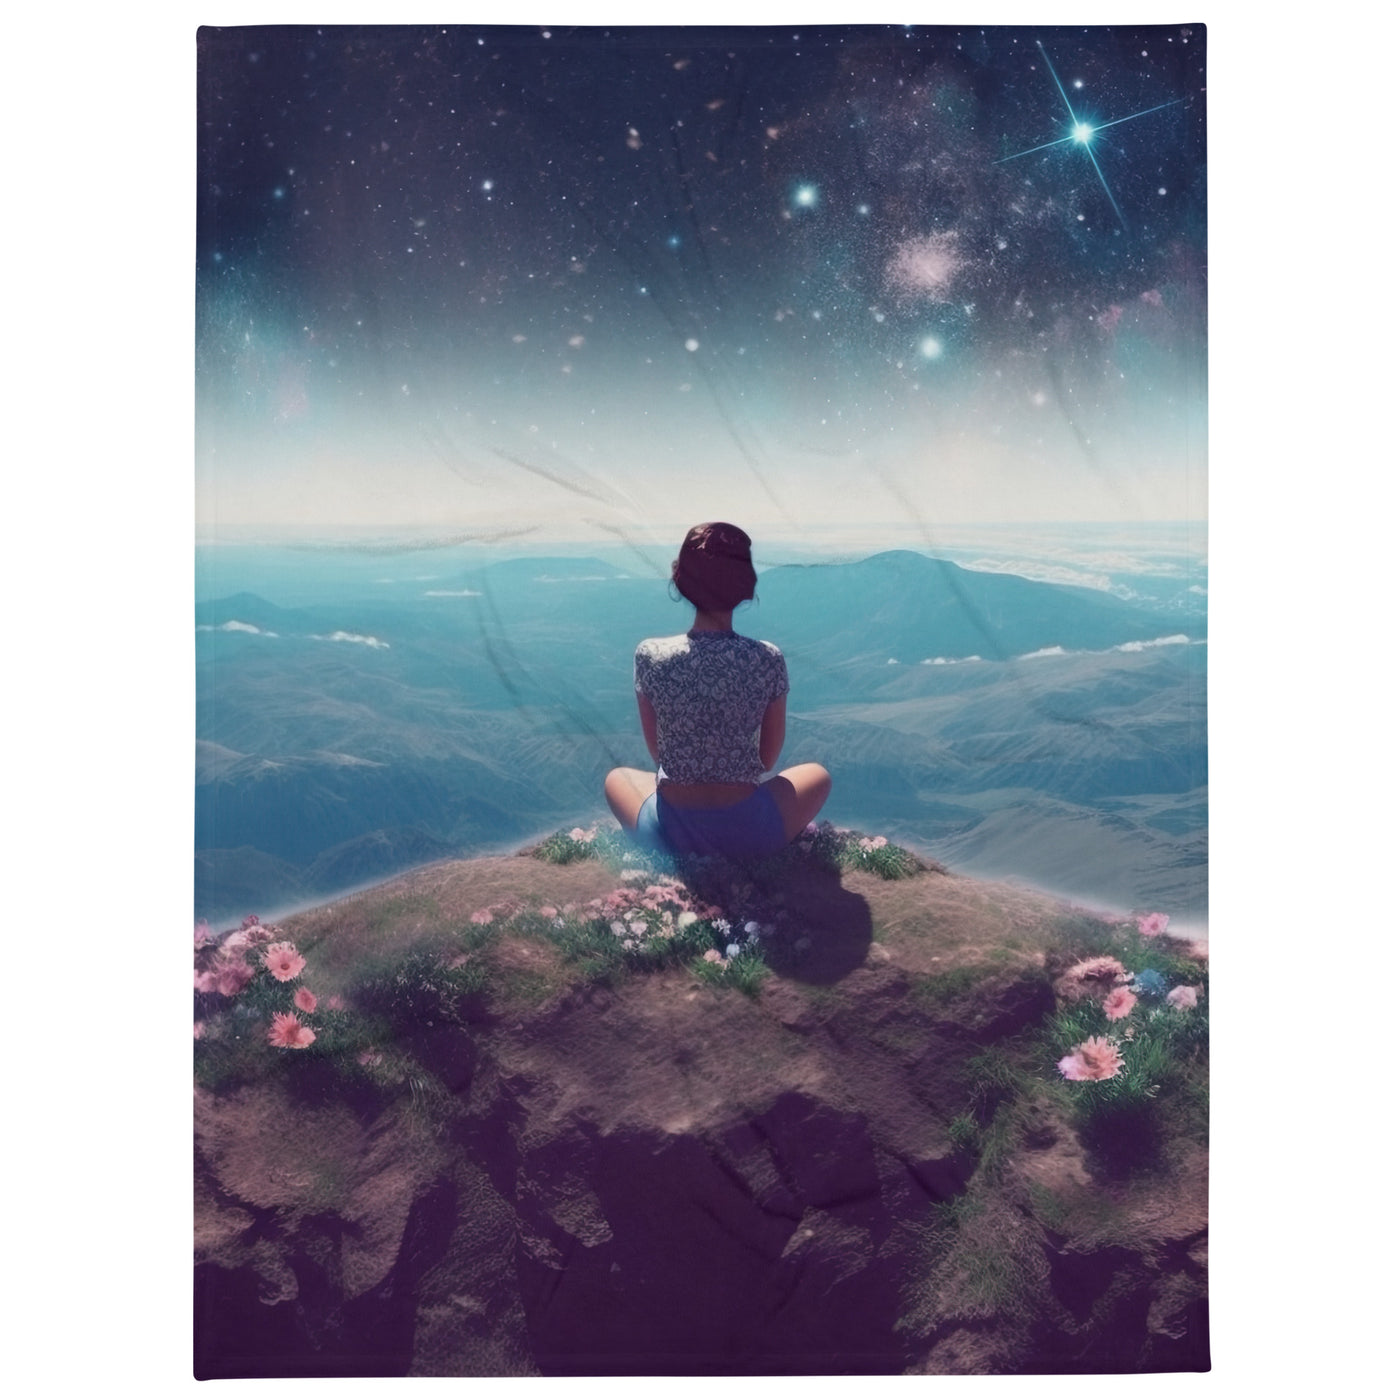 Frau sitzt auf Berg – Cosmos und Sterne im Hintergrund - Landschaftsmalerei - Überwurfdecke berge xxx 152.4 x 203.2 cm